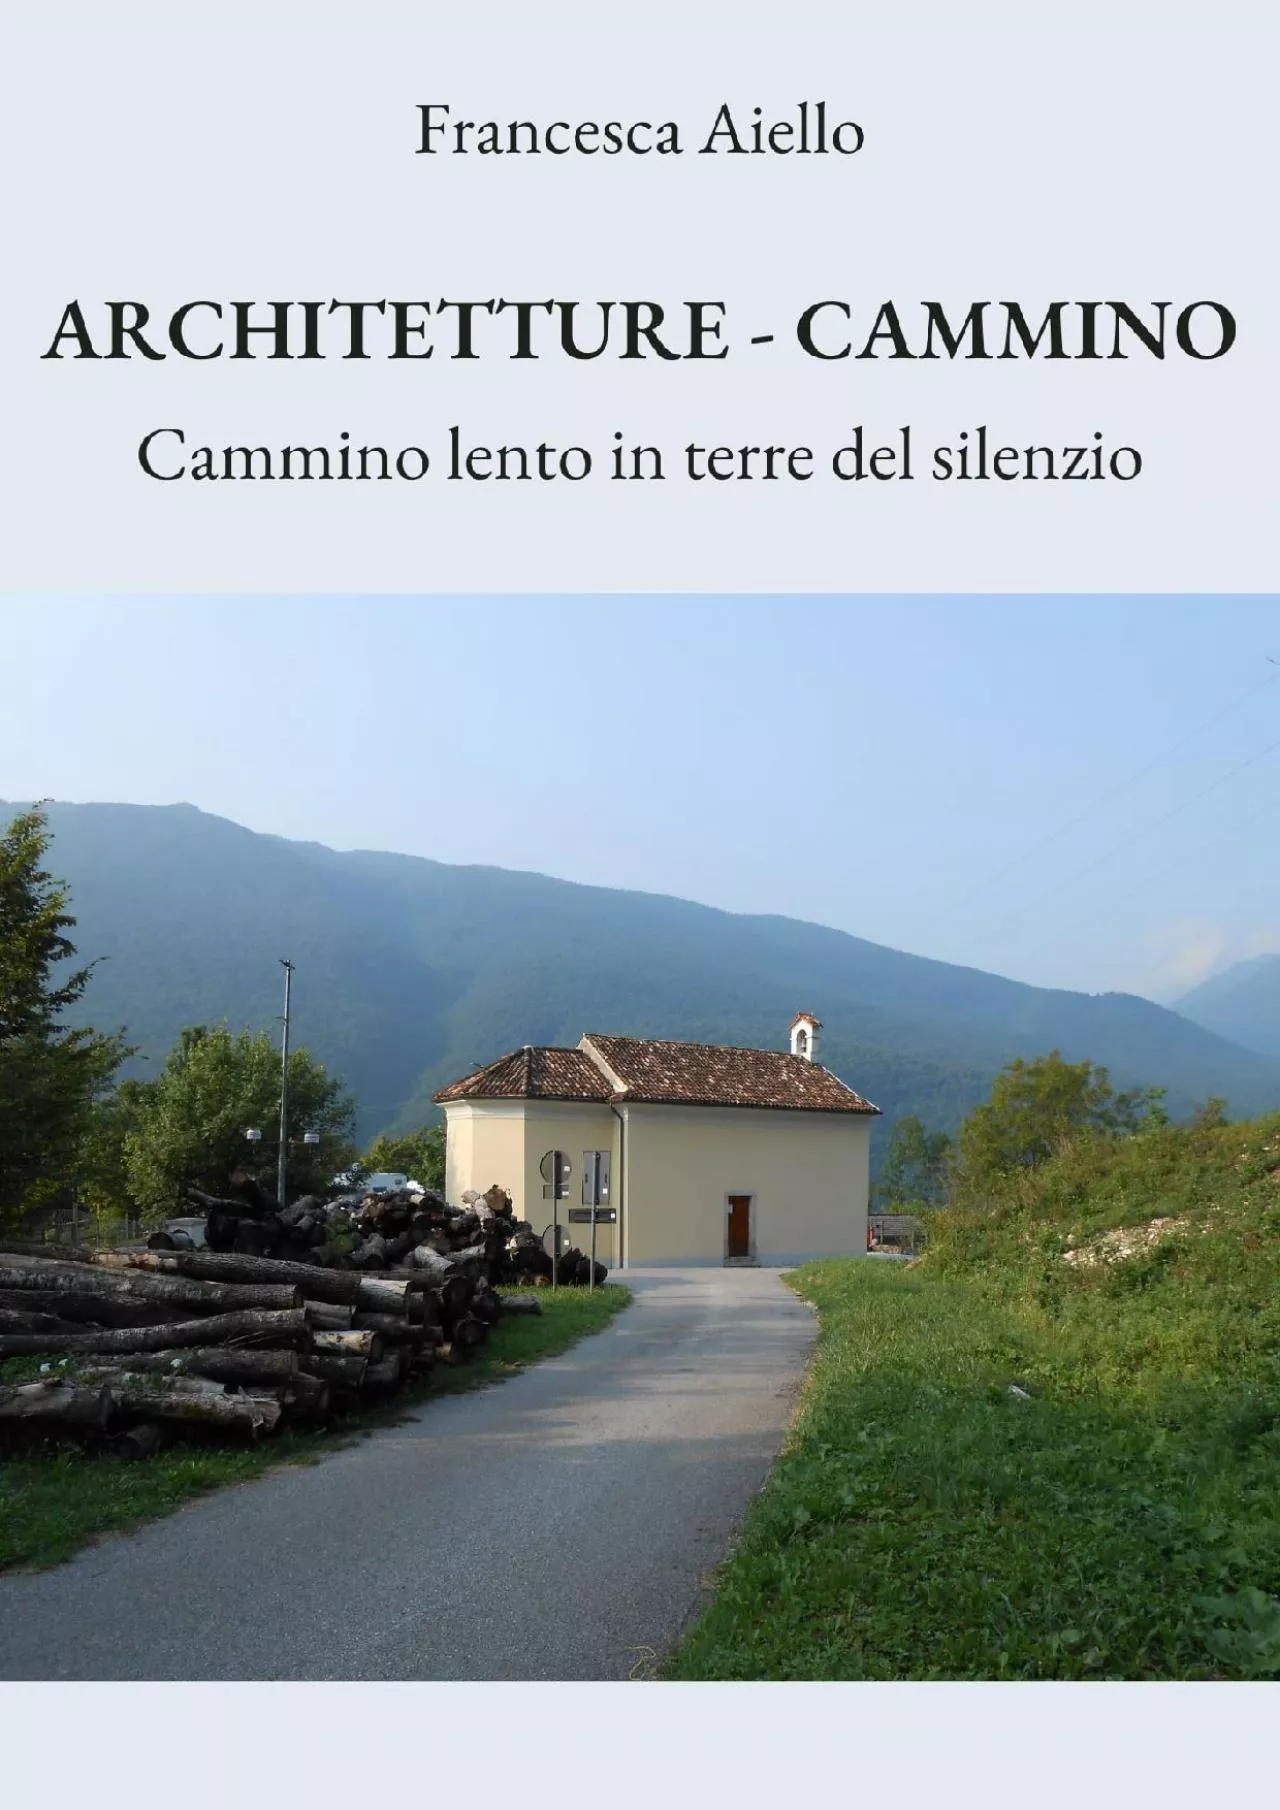 [DOWNLOAD] ARCHITETTURE-CAMMINO: Cammino lento in terre del silenzio Italian Edition